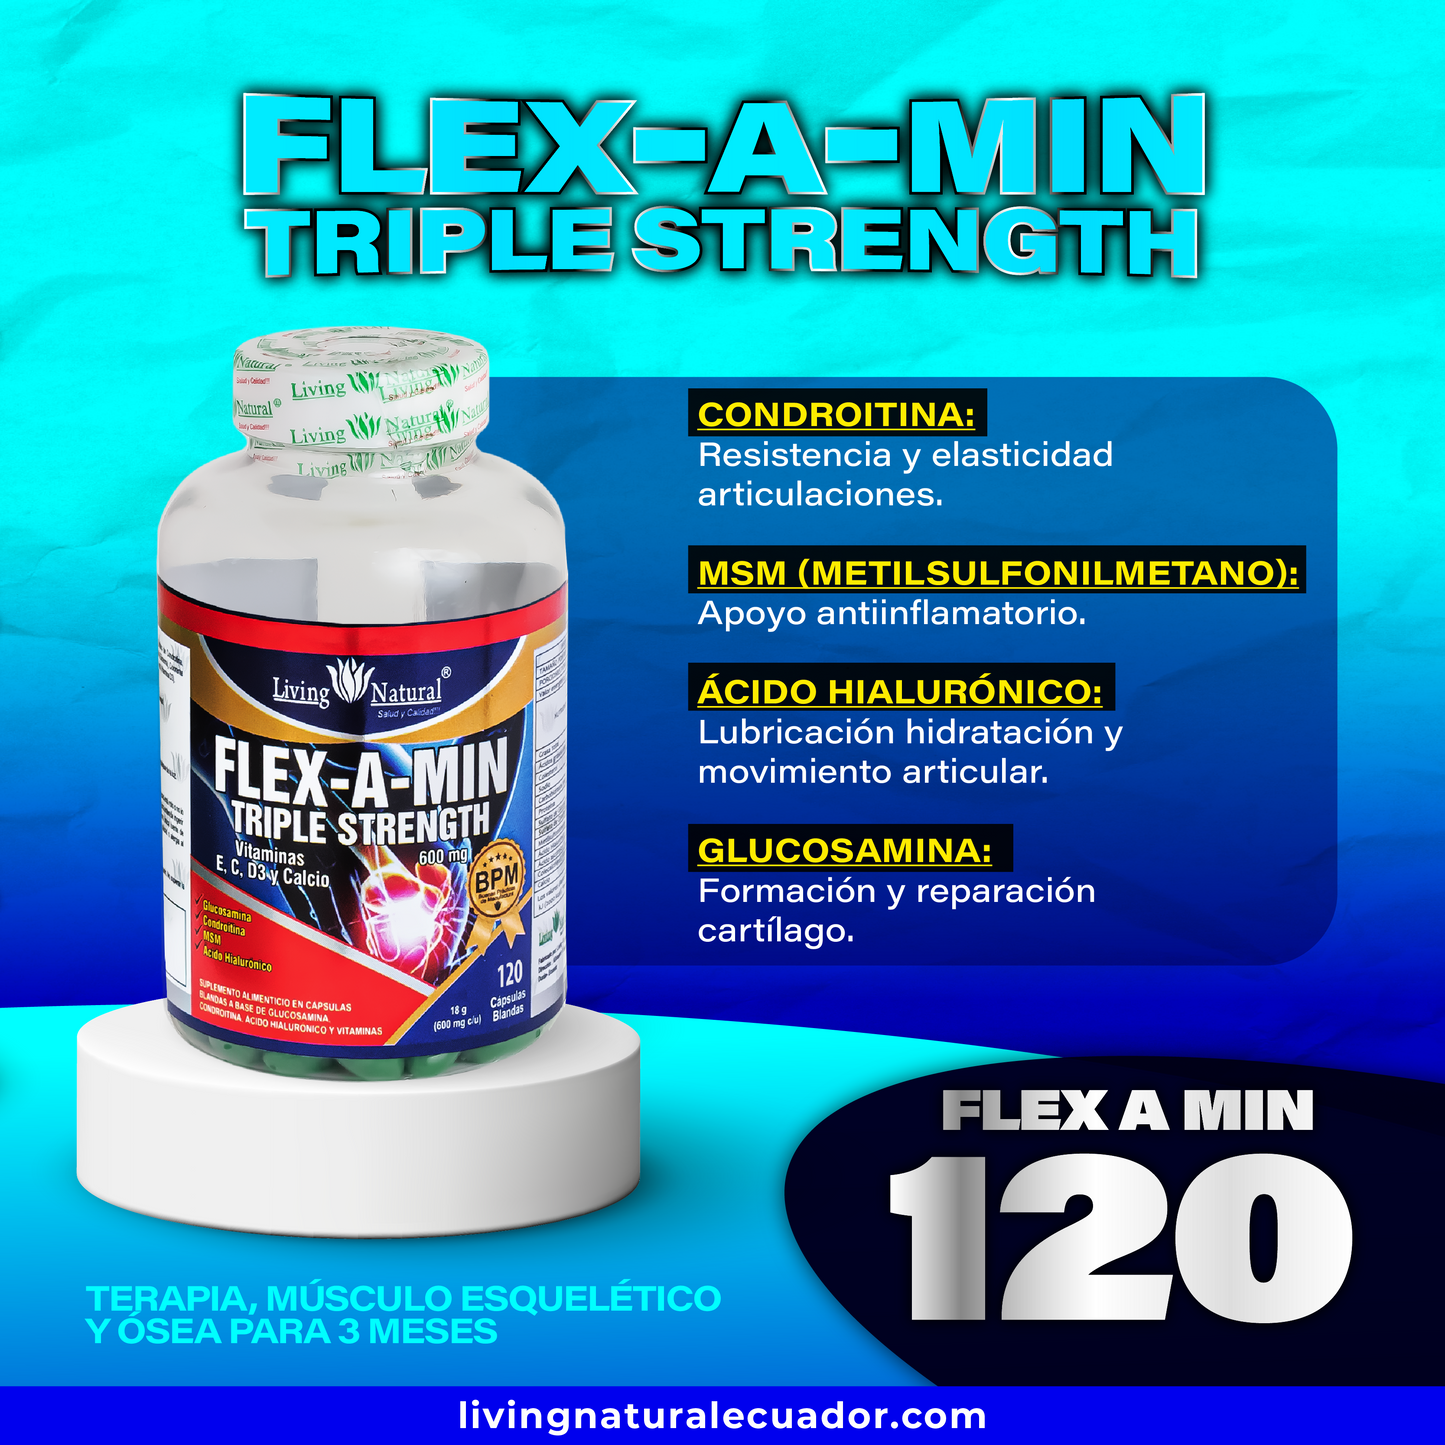 FLEX-A-MIN TRIPLE STRENGTH | 600 mg | X30, X90, X120